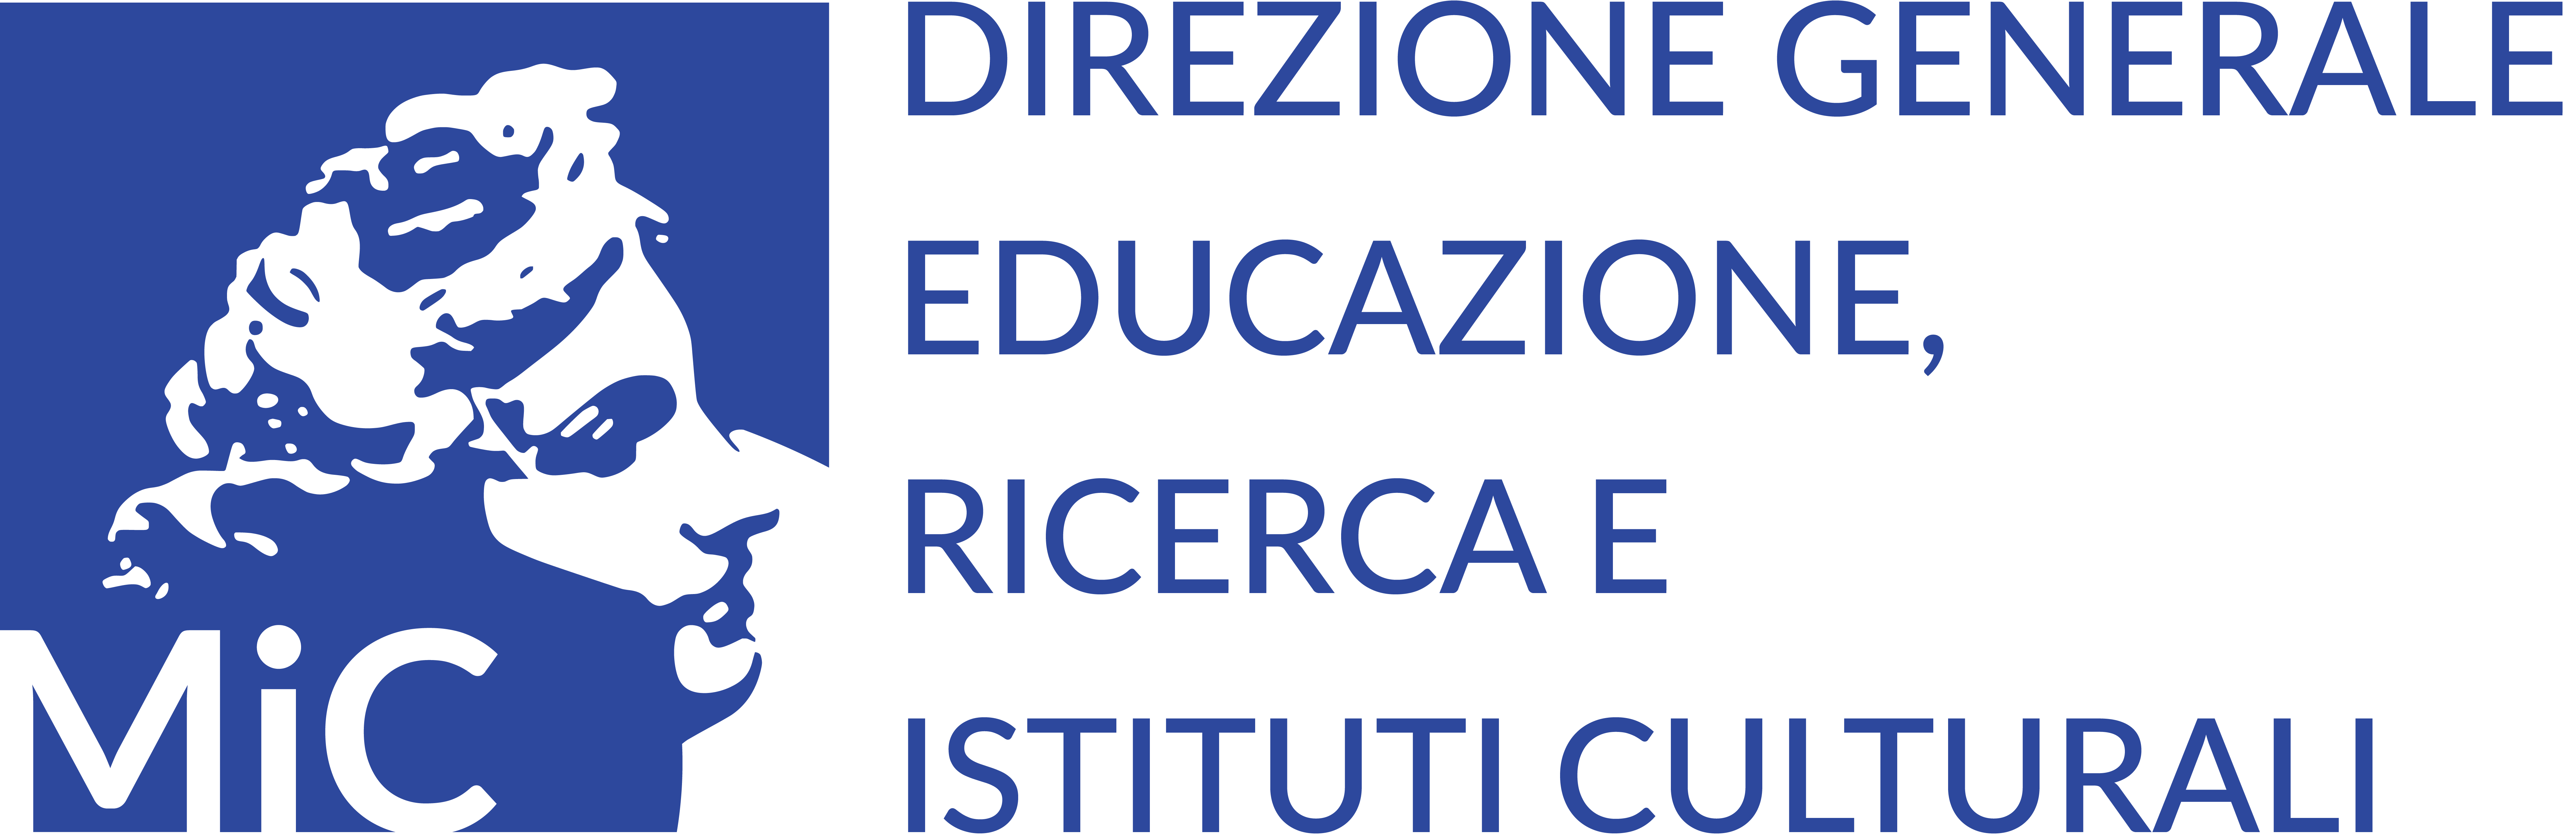 Logo direzione generale educazione ricerca e istituti culturali